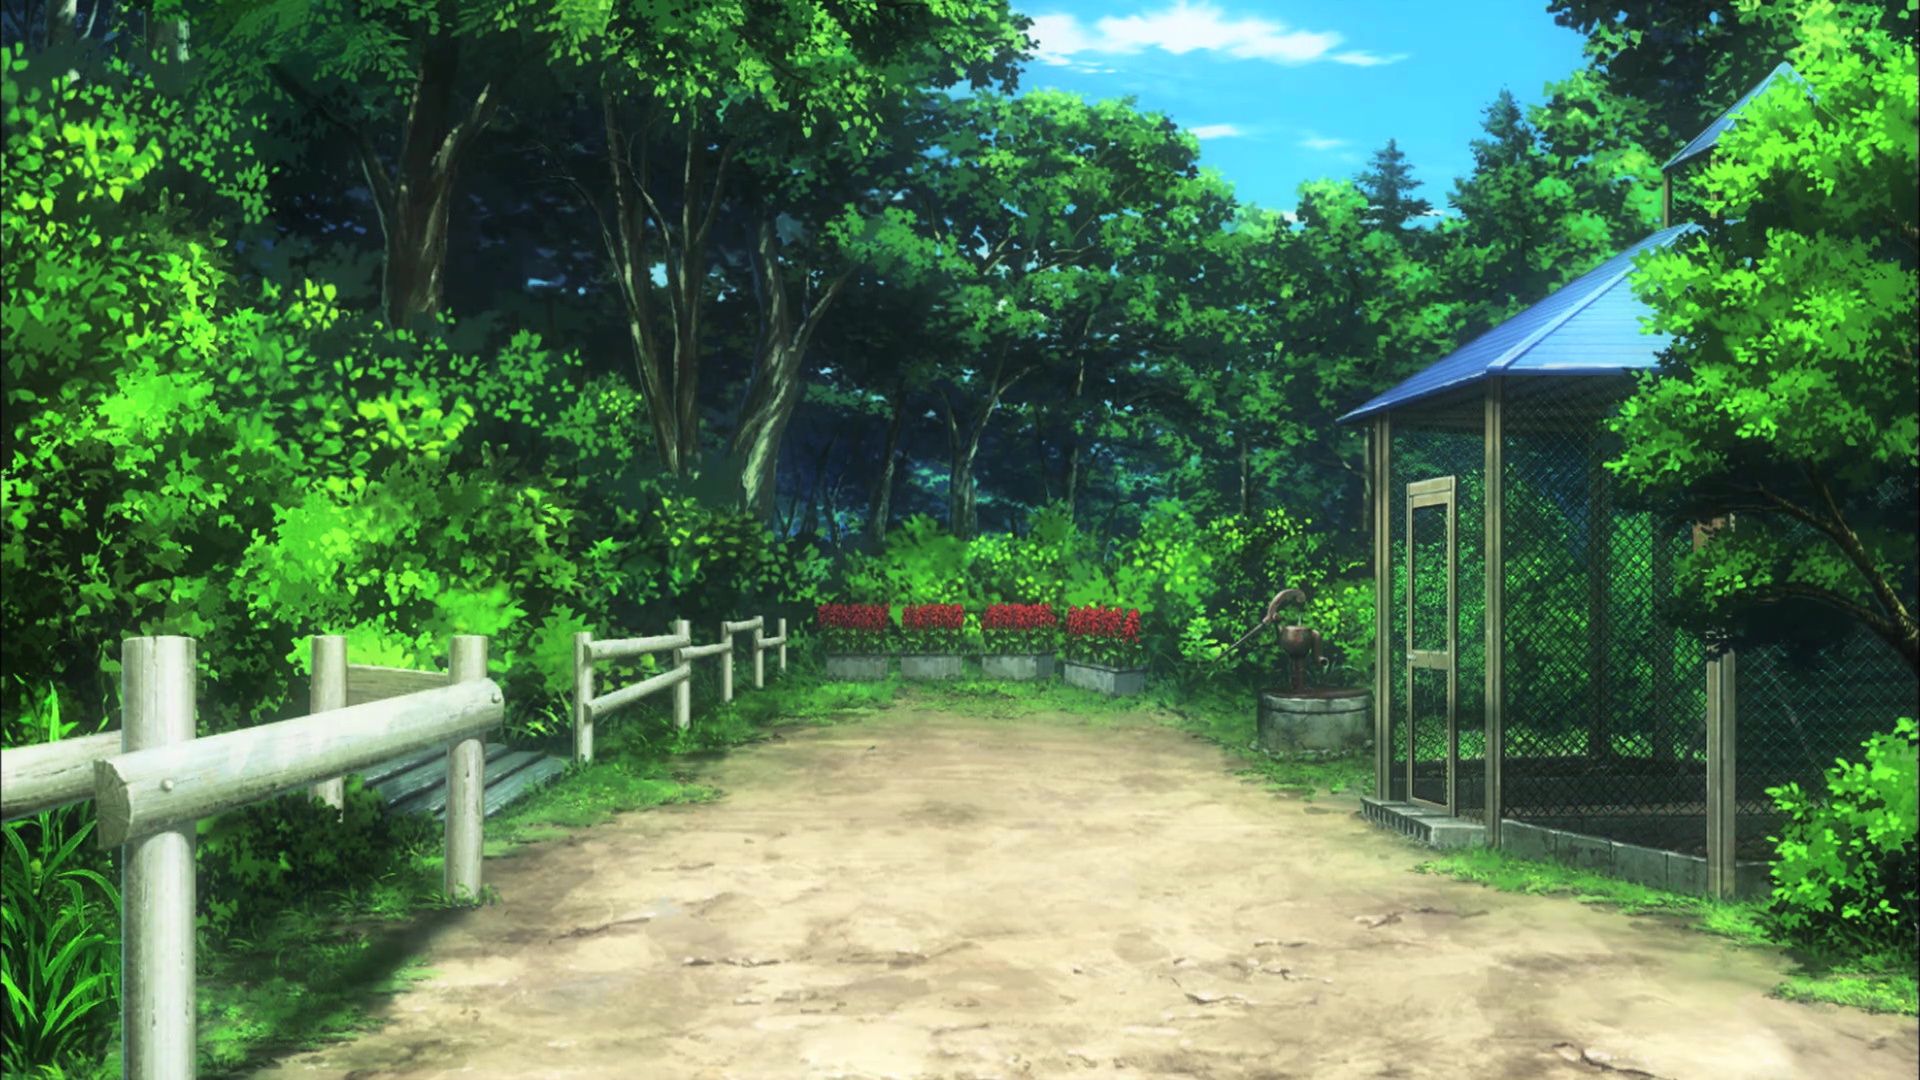 Non Non Biyori Repeat [Season 2] Ep 4 Background 1080p. Anime scenery, Anime background, Landscape